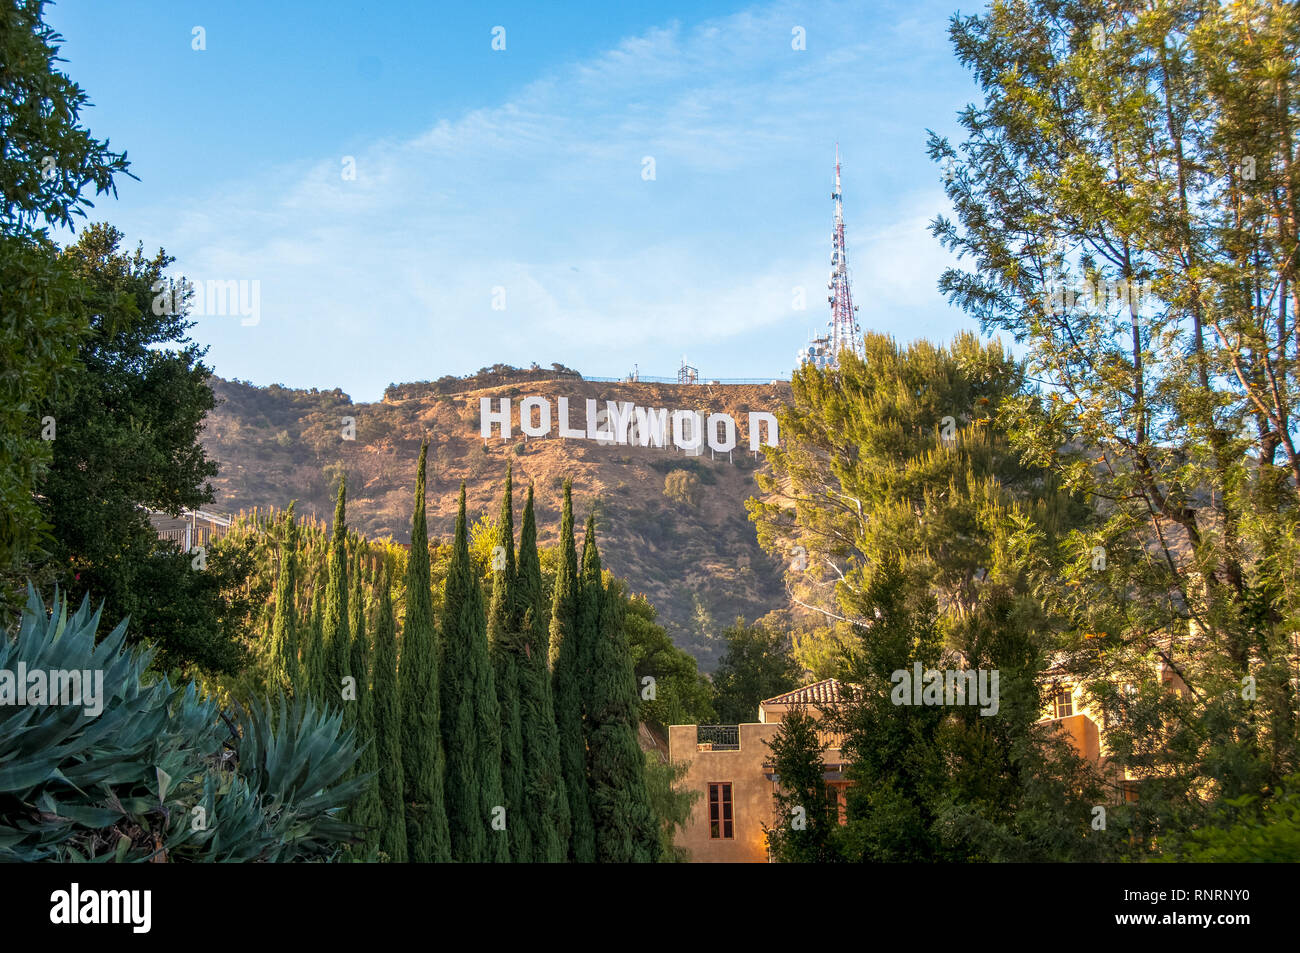 Famoso cartel de Hollywood en Los Angeles, California. Foto de stock